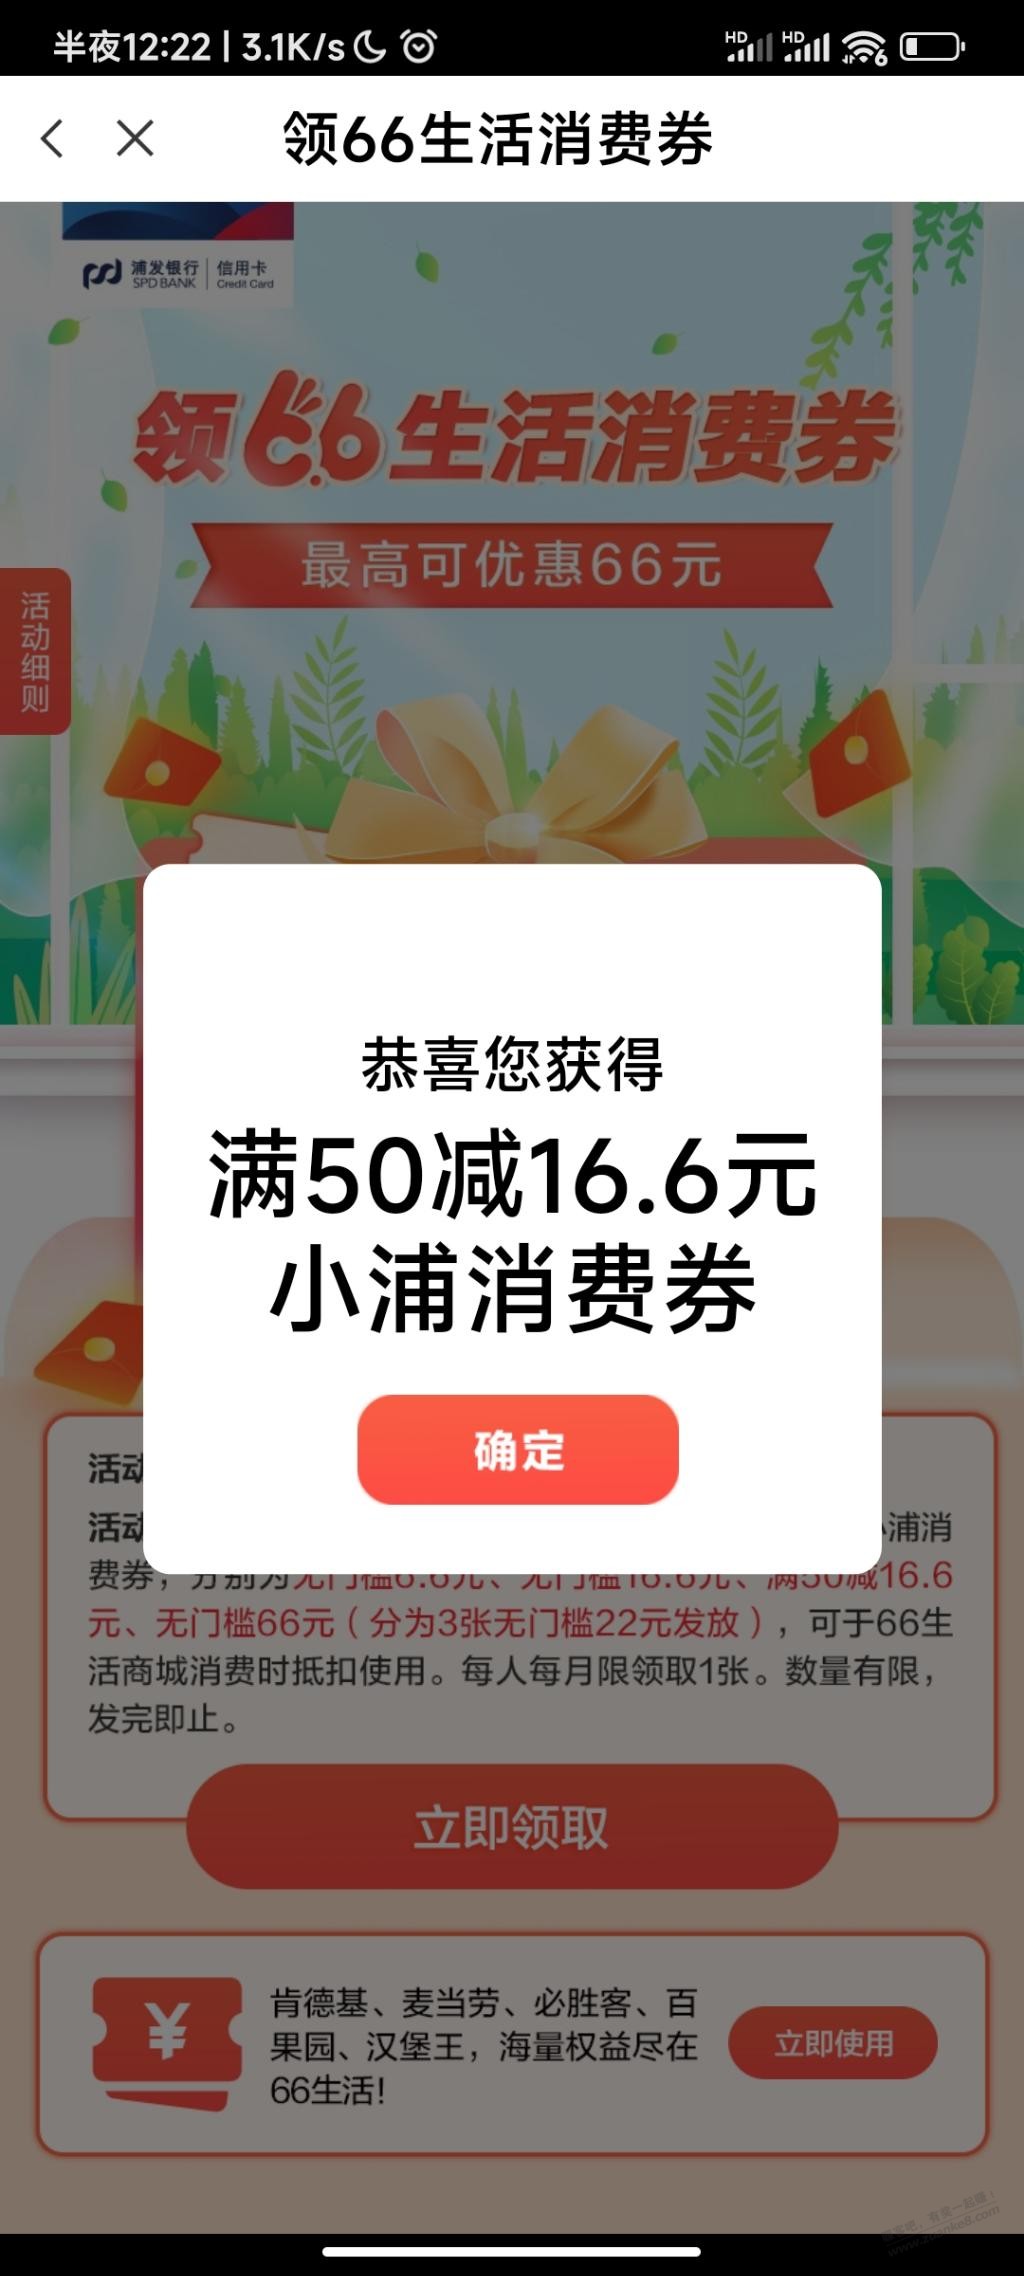 浦大喜奔66-惠小助(52huixz.com)